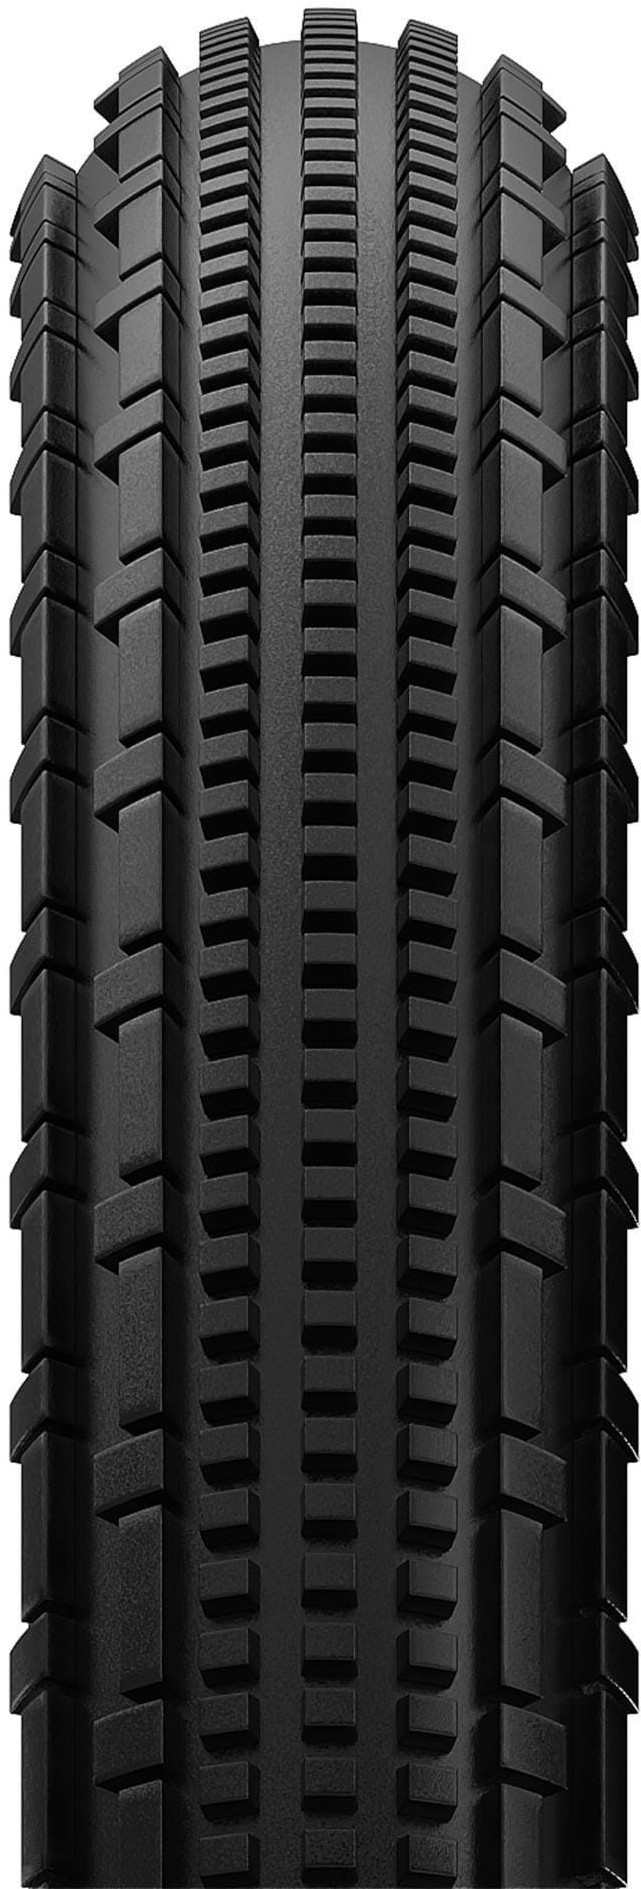 Gravelking SK Plus 650b Gravel Tyre image 1